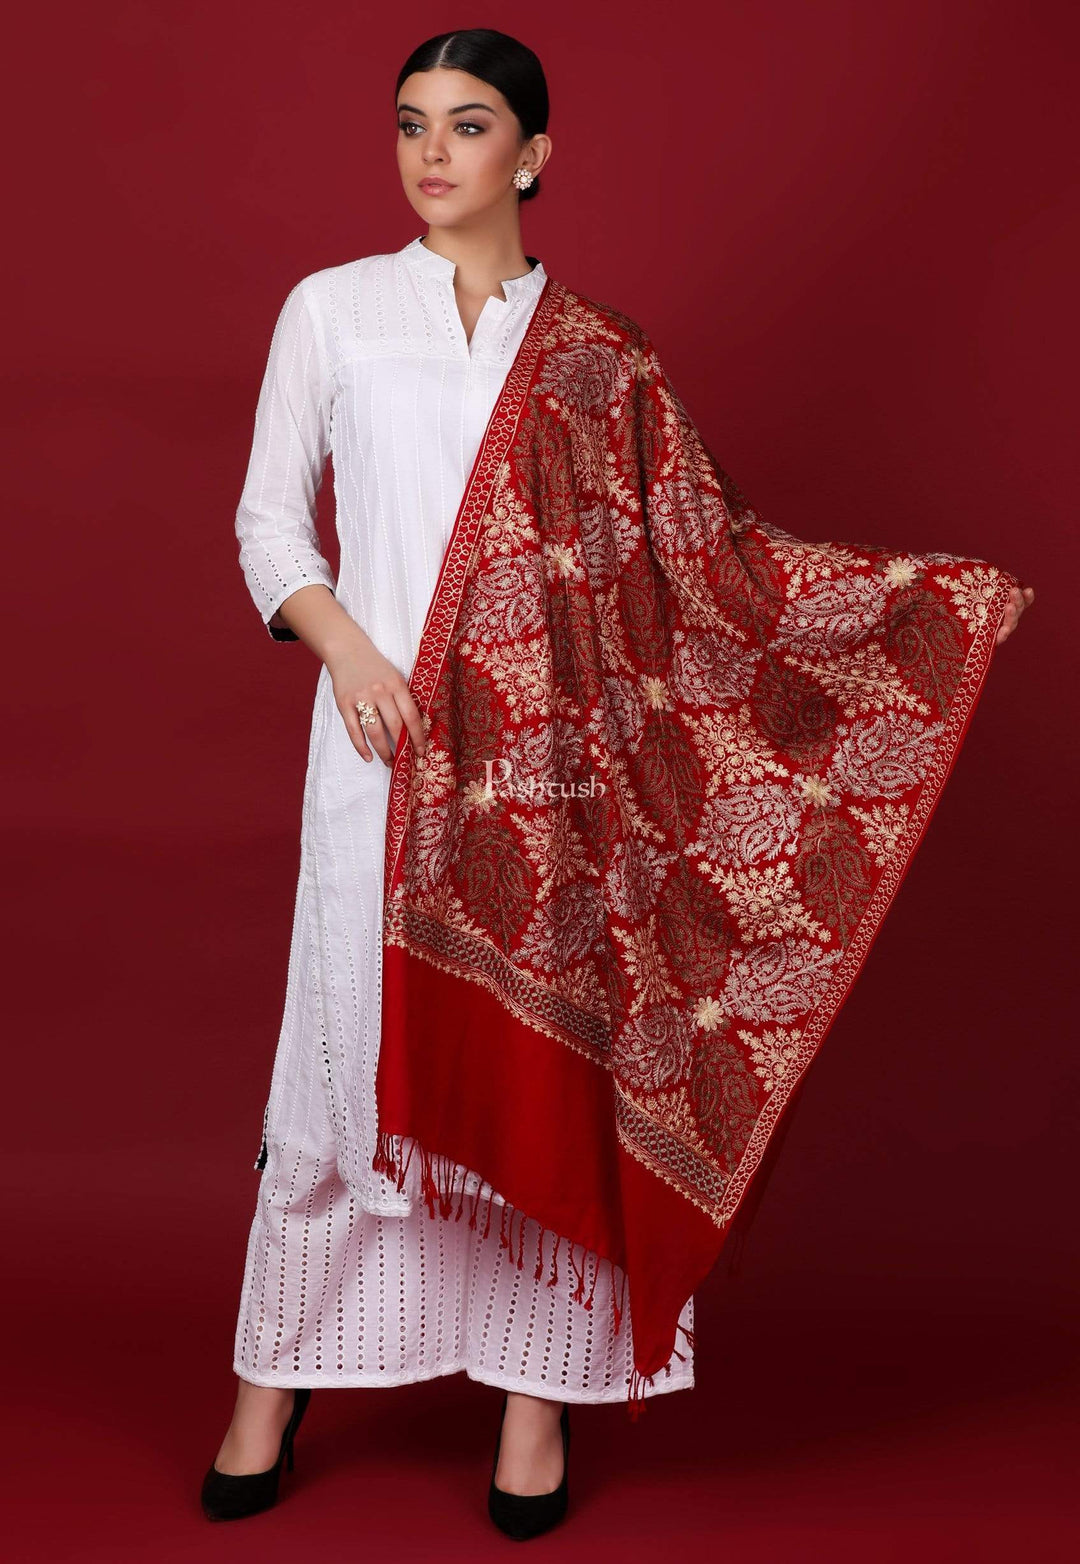 Pashtush Store Stole Pashtush Womens Fine Woollen, Silky Thread Nalki Embroidery Stole, Maroon